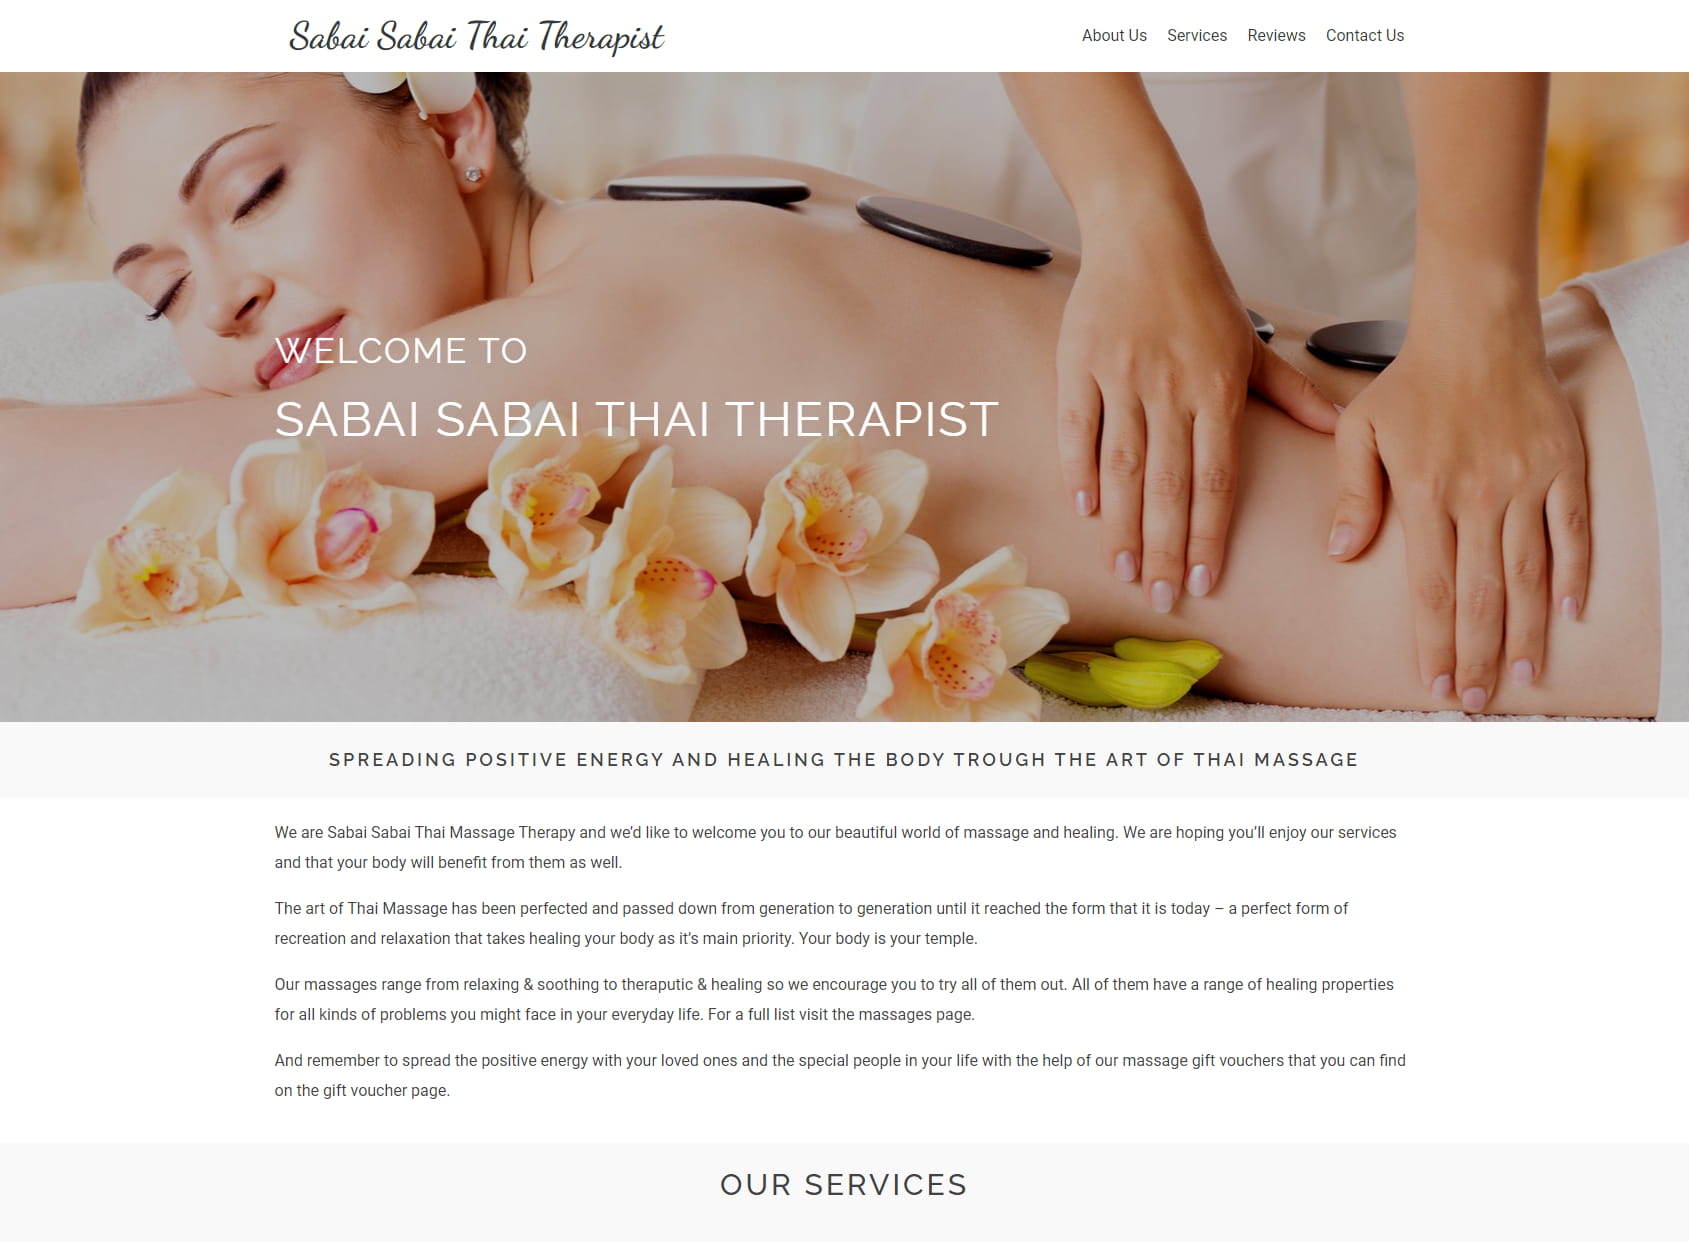 Sabai Sabai Thai Therapist Ltd